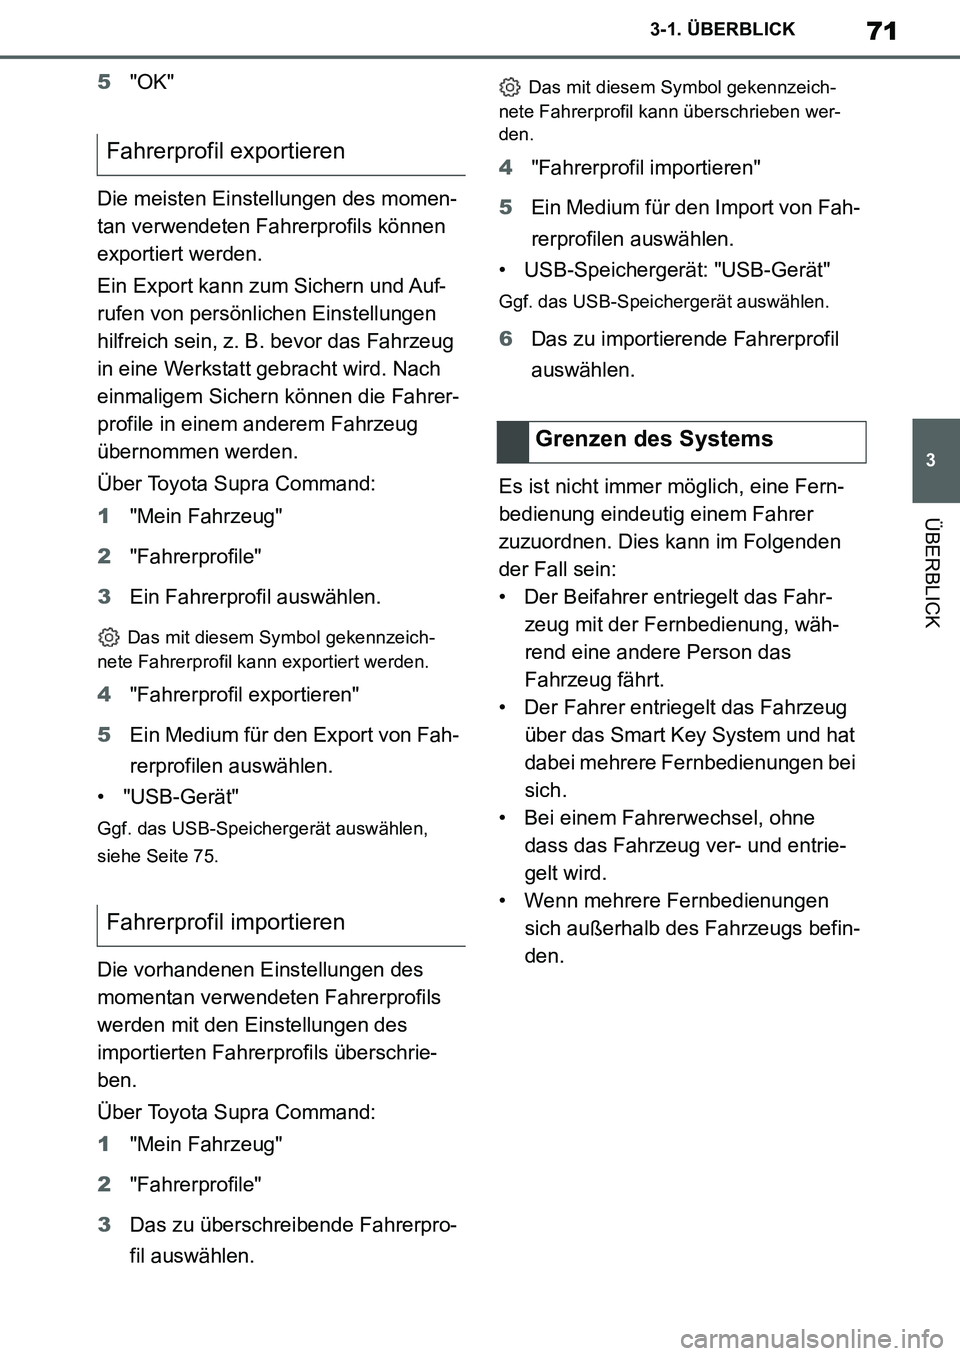 TOYOTA SUPRA 2020  Betriebsanleitungen (in German) 71
3
Supra Owners Manual_EM
3-1. ÜBERBLICK
ÜBERBLICK
5"OK"
Die meisten Einstellungen des momen-
tan verwendeten Fahrerprofils können 
exportiert werden.
Ein Export kann zum Sichern und Auf-
rufen 